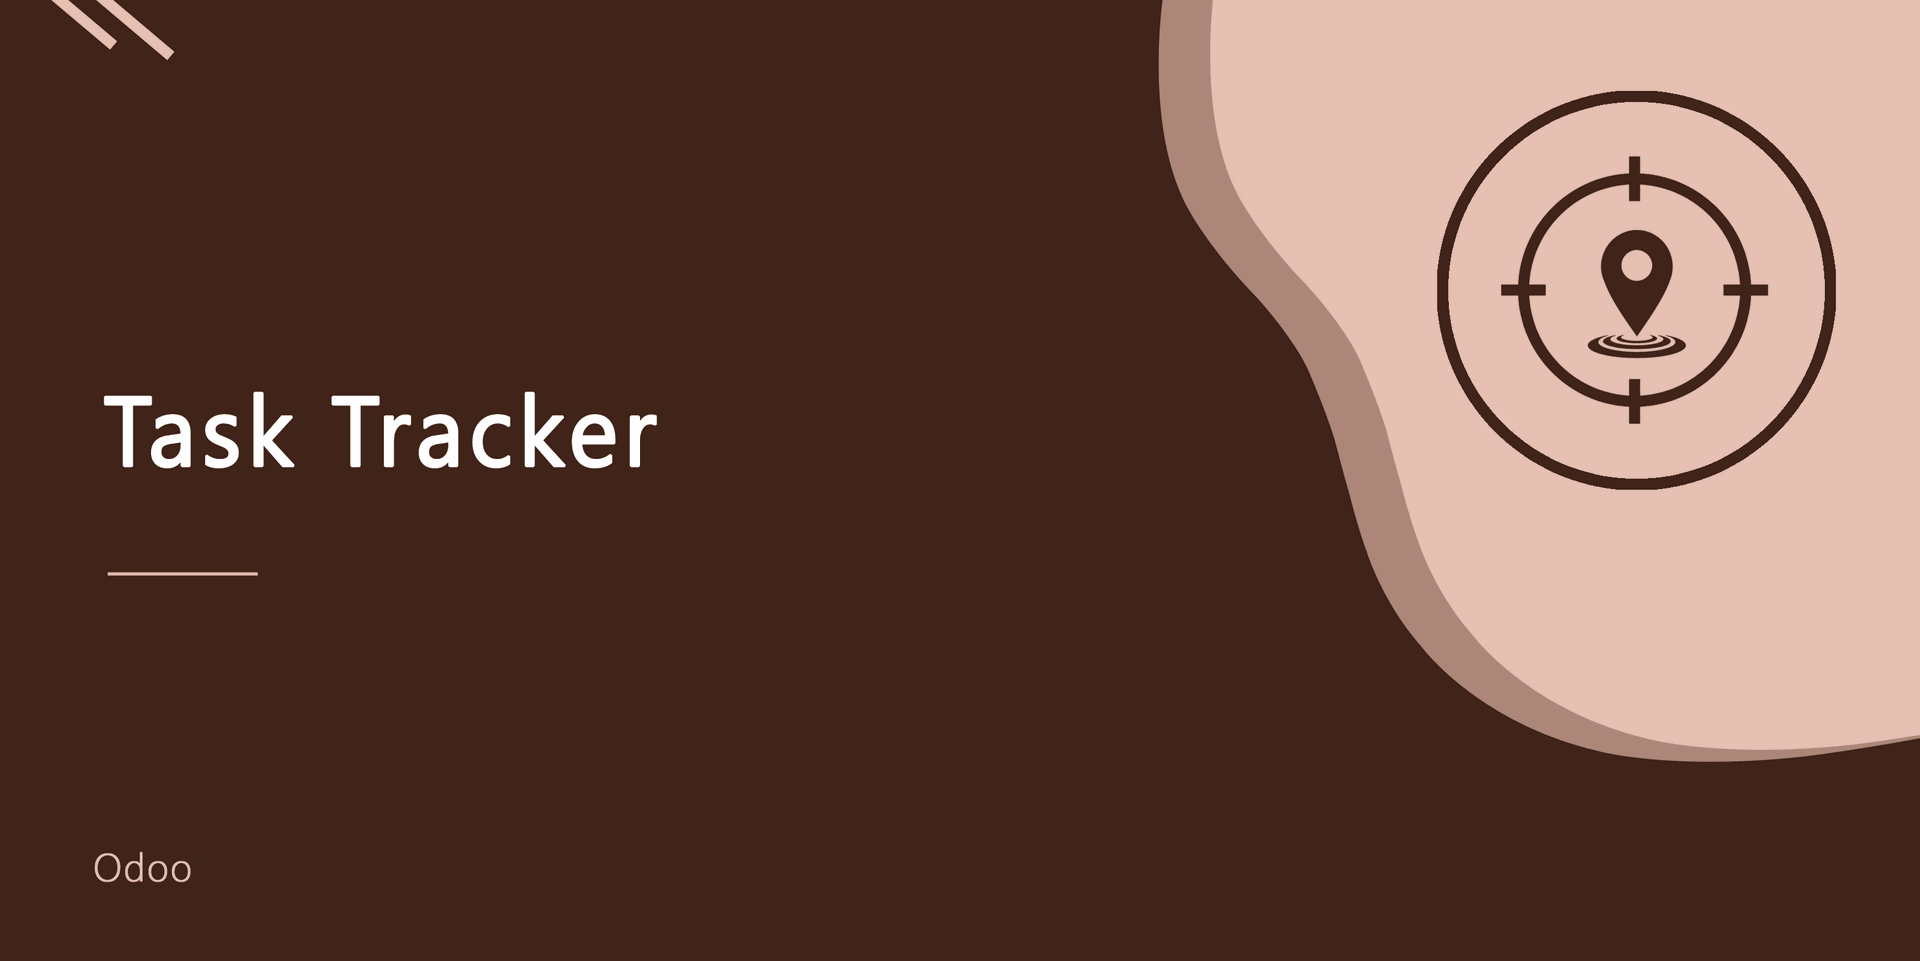 Task Tracker
